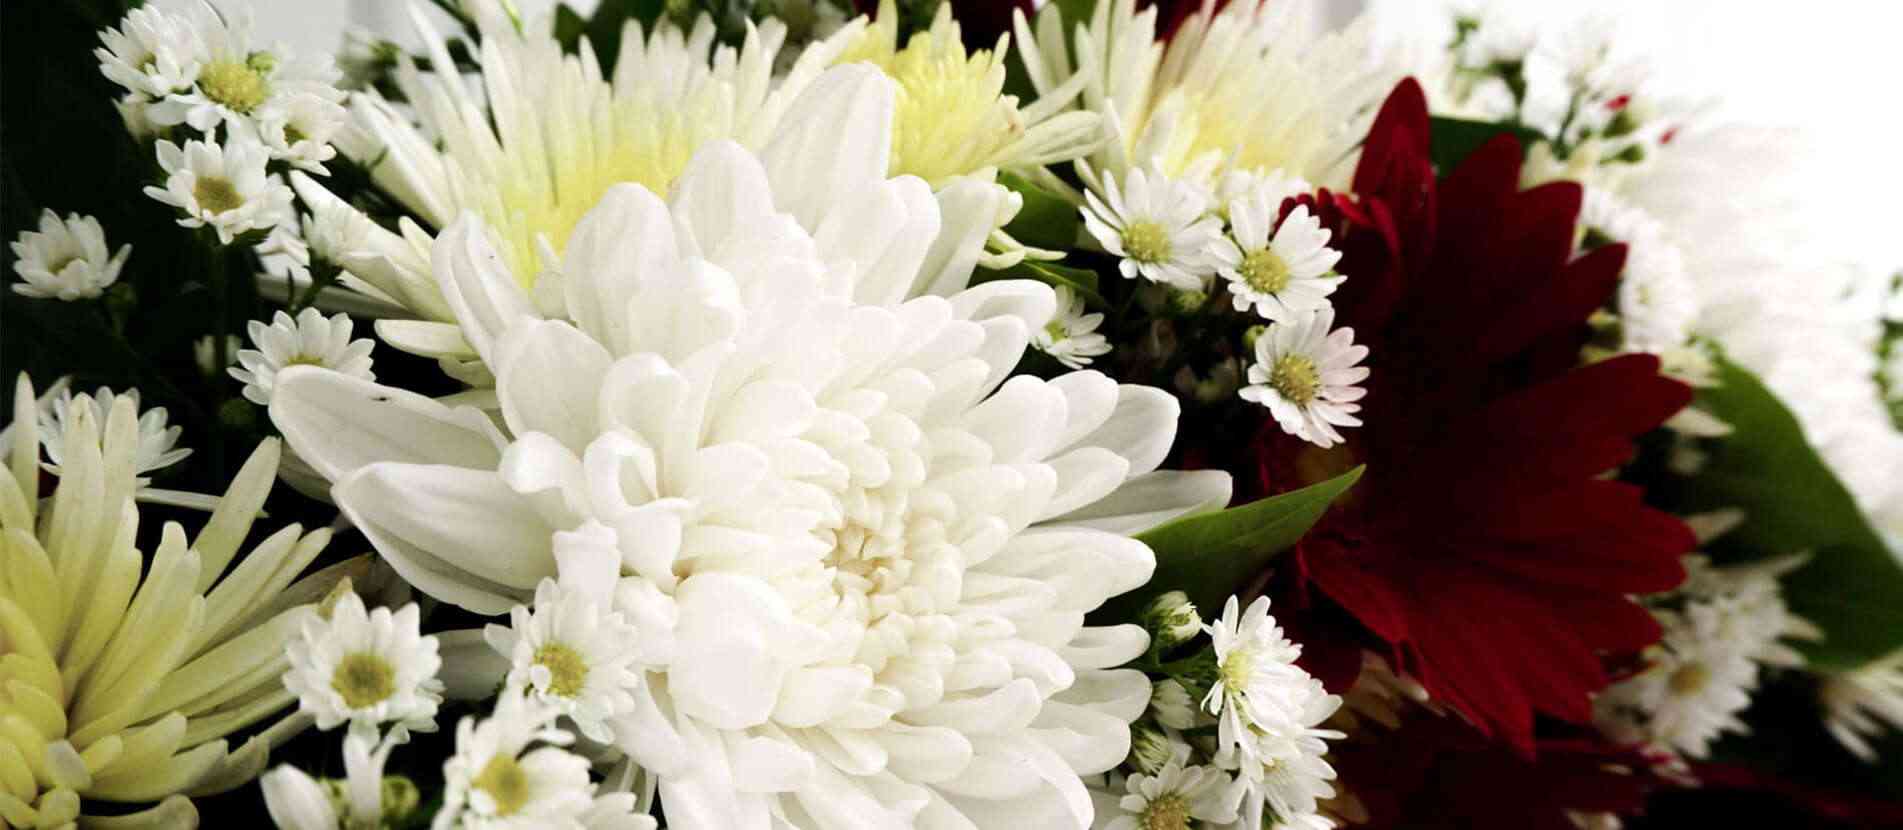 ดอกไม้สีขาวล้อมรอบด้วยดอกไม้นานาชนิดสำหรับตกแต่งลงพวงหรีด